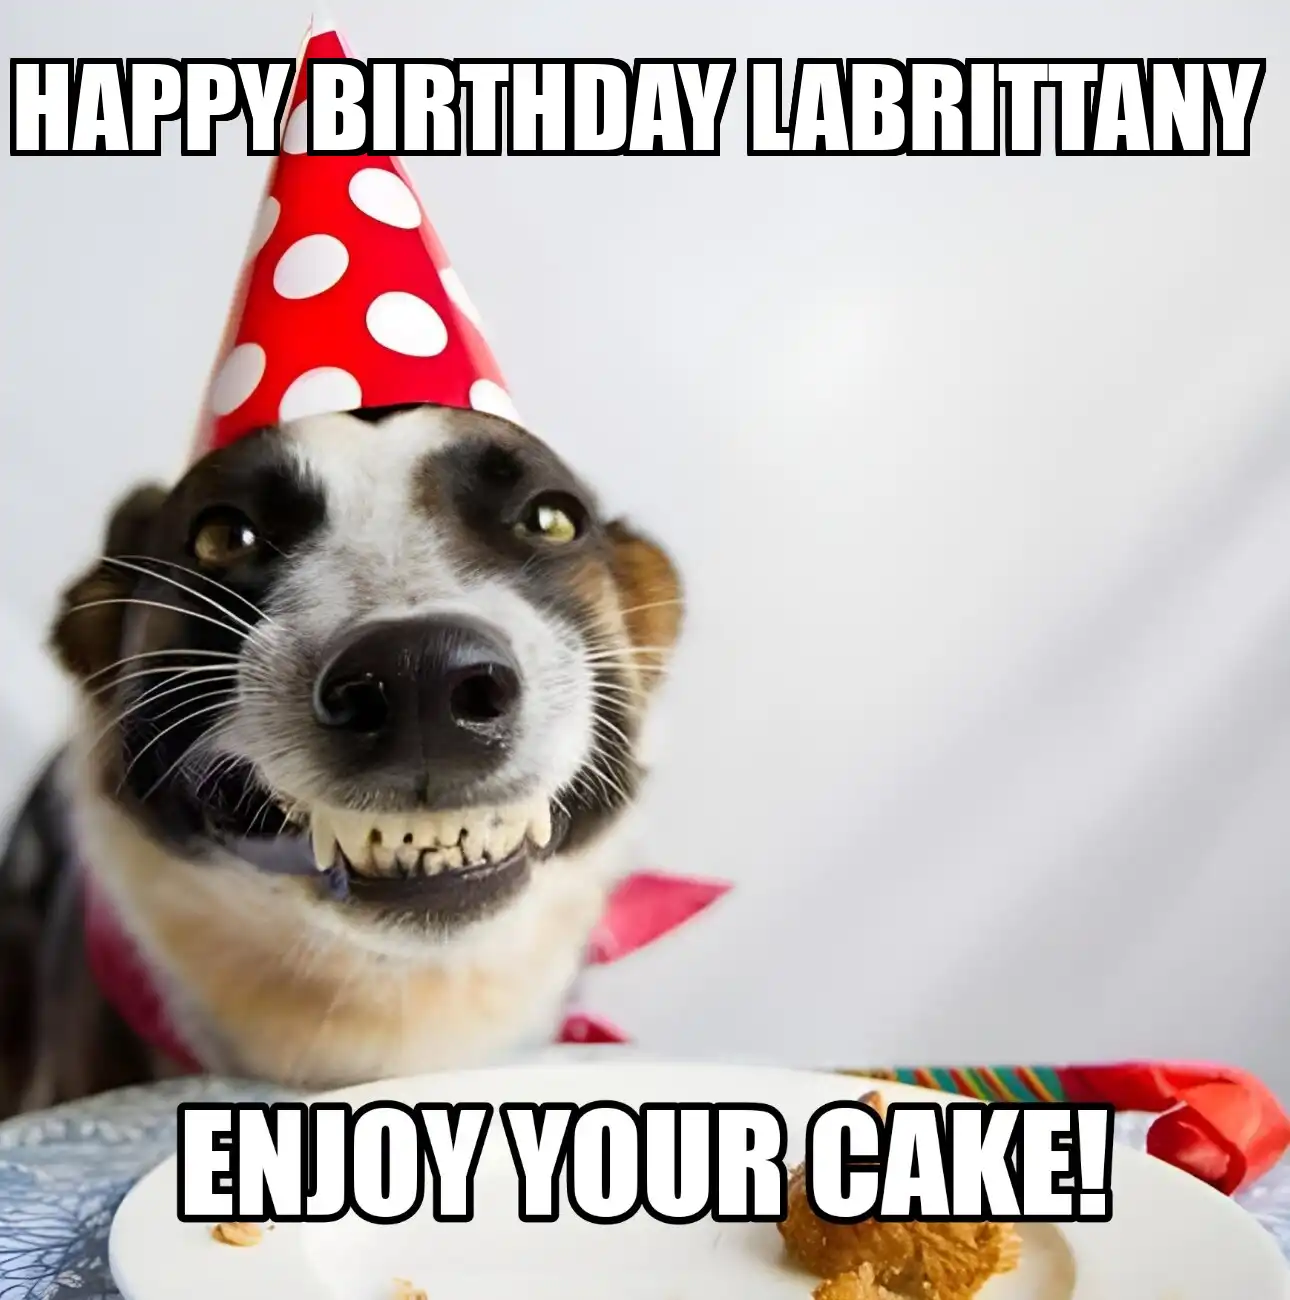 Happy Birthday Labrittany Enjoy Your Cake Dog Meme